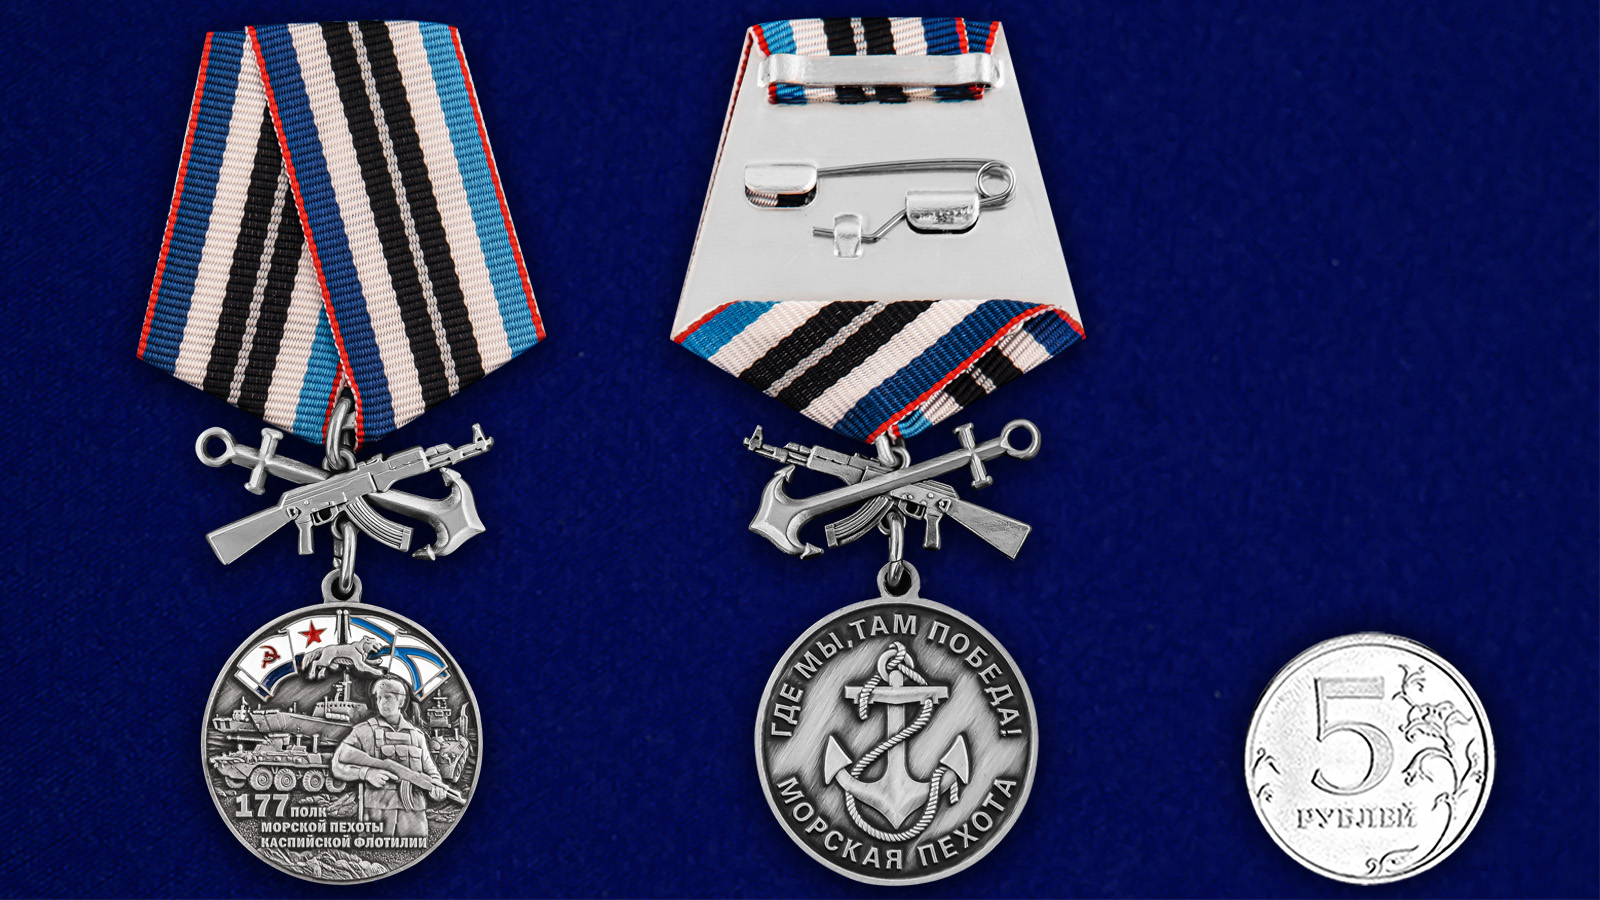 Купить медаль 177-й полк морской пехоты онлайн выгодно